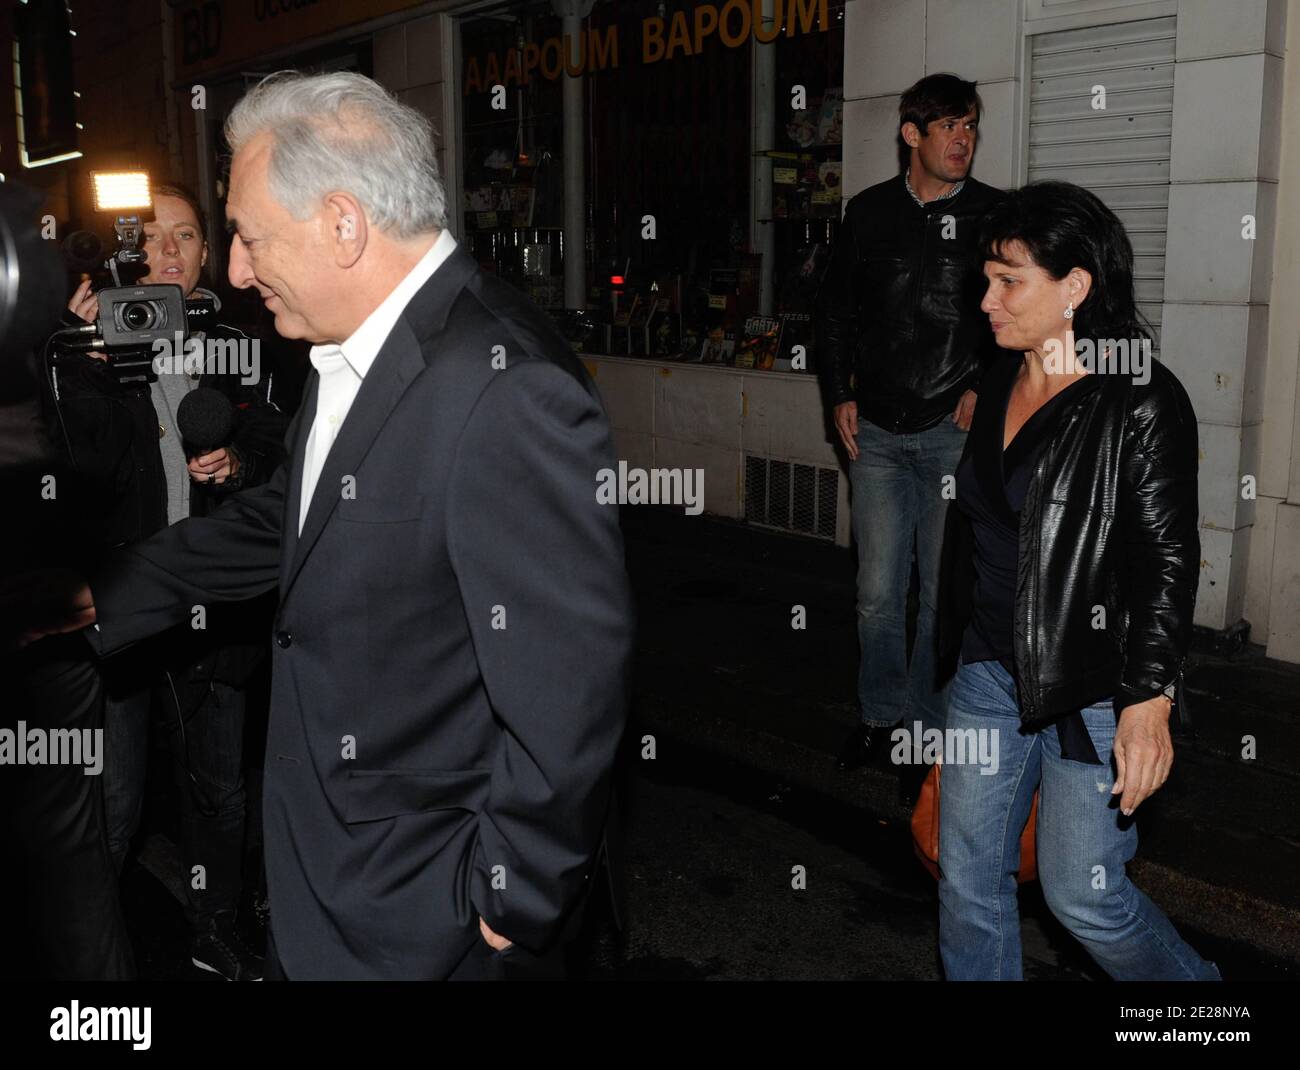 Dominique Strauss-Kahn et sa femme Anne Sinclair quittent un immeuble après avoir déjeuné avec des amis à Paris, en France, le 18 septembre 2011. Photo par ABACAPRESS.COM Banque D'Images